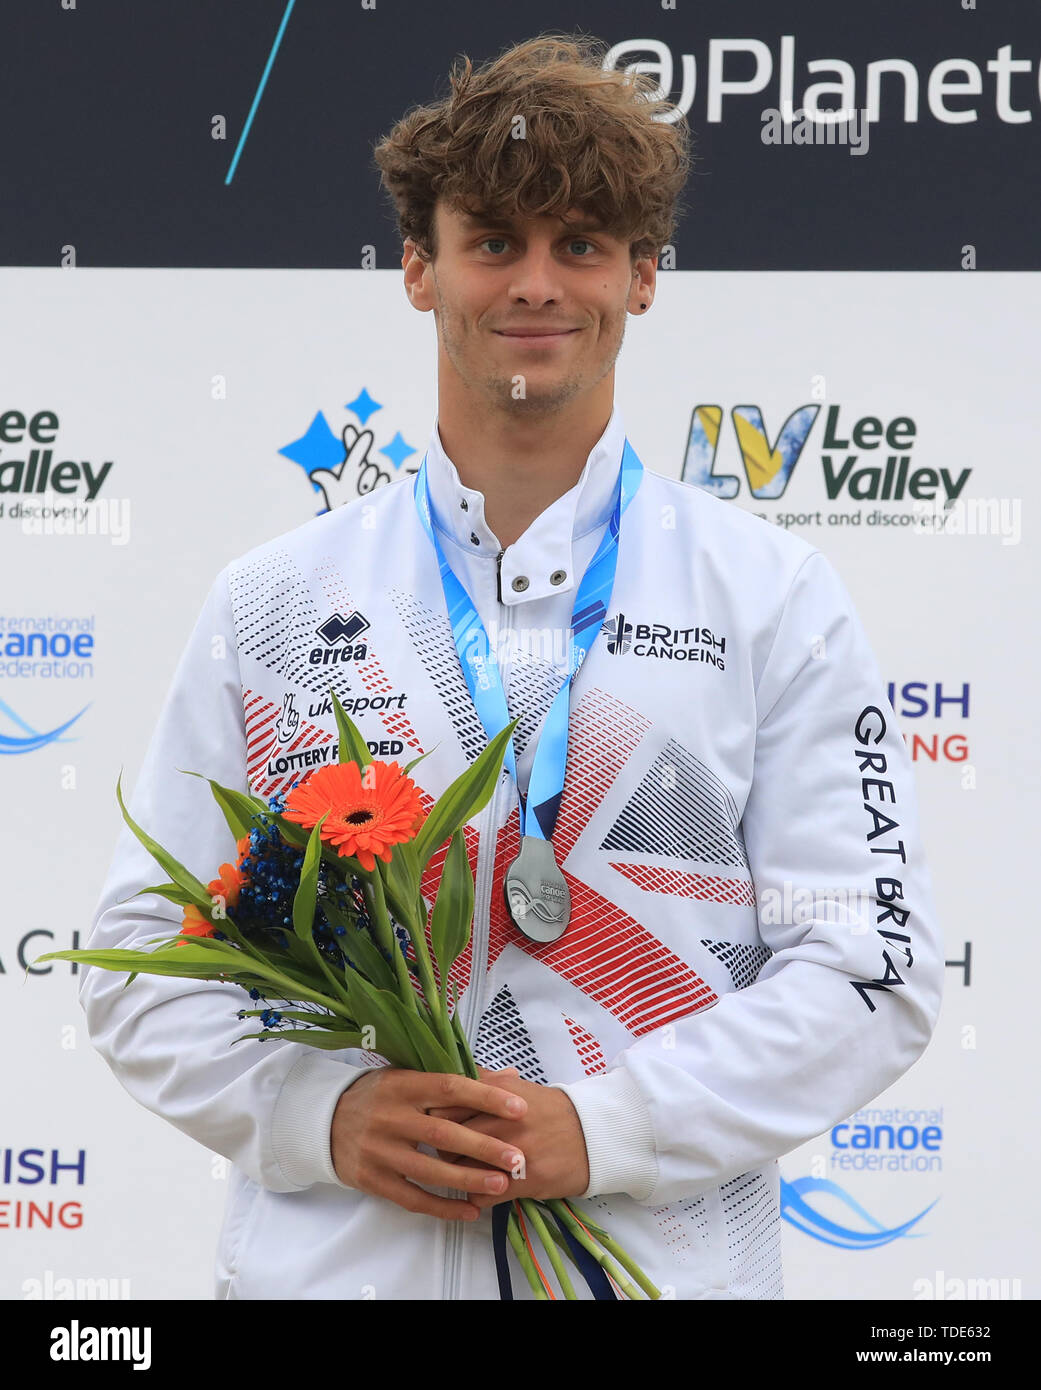 Medaglia di argento in Gran Bretagna è Adam Burgess sul podio durante il giorno due di canoa slalom della Coppa del Mondo a Lee Valley White Water Centre di Londra. Foto Stock